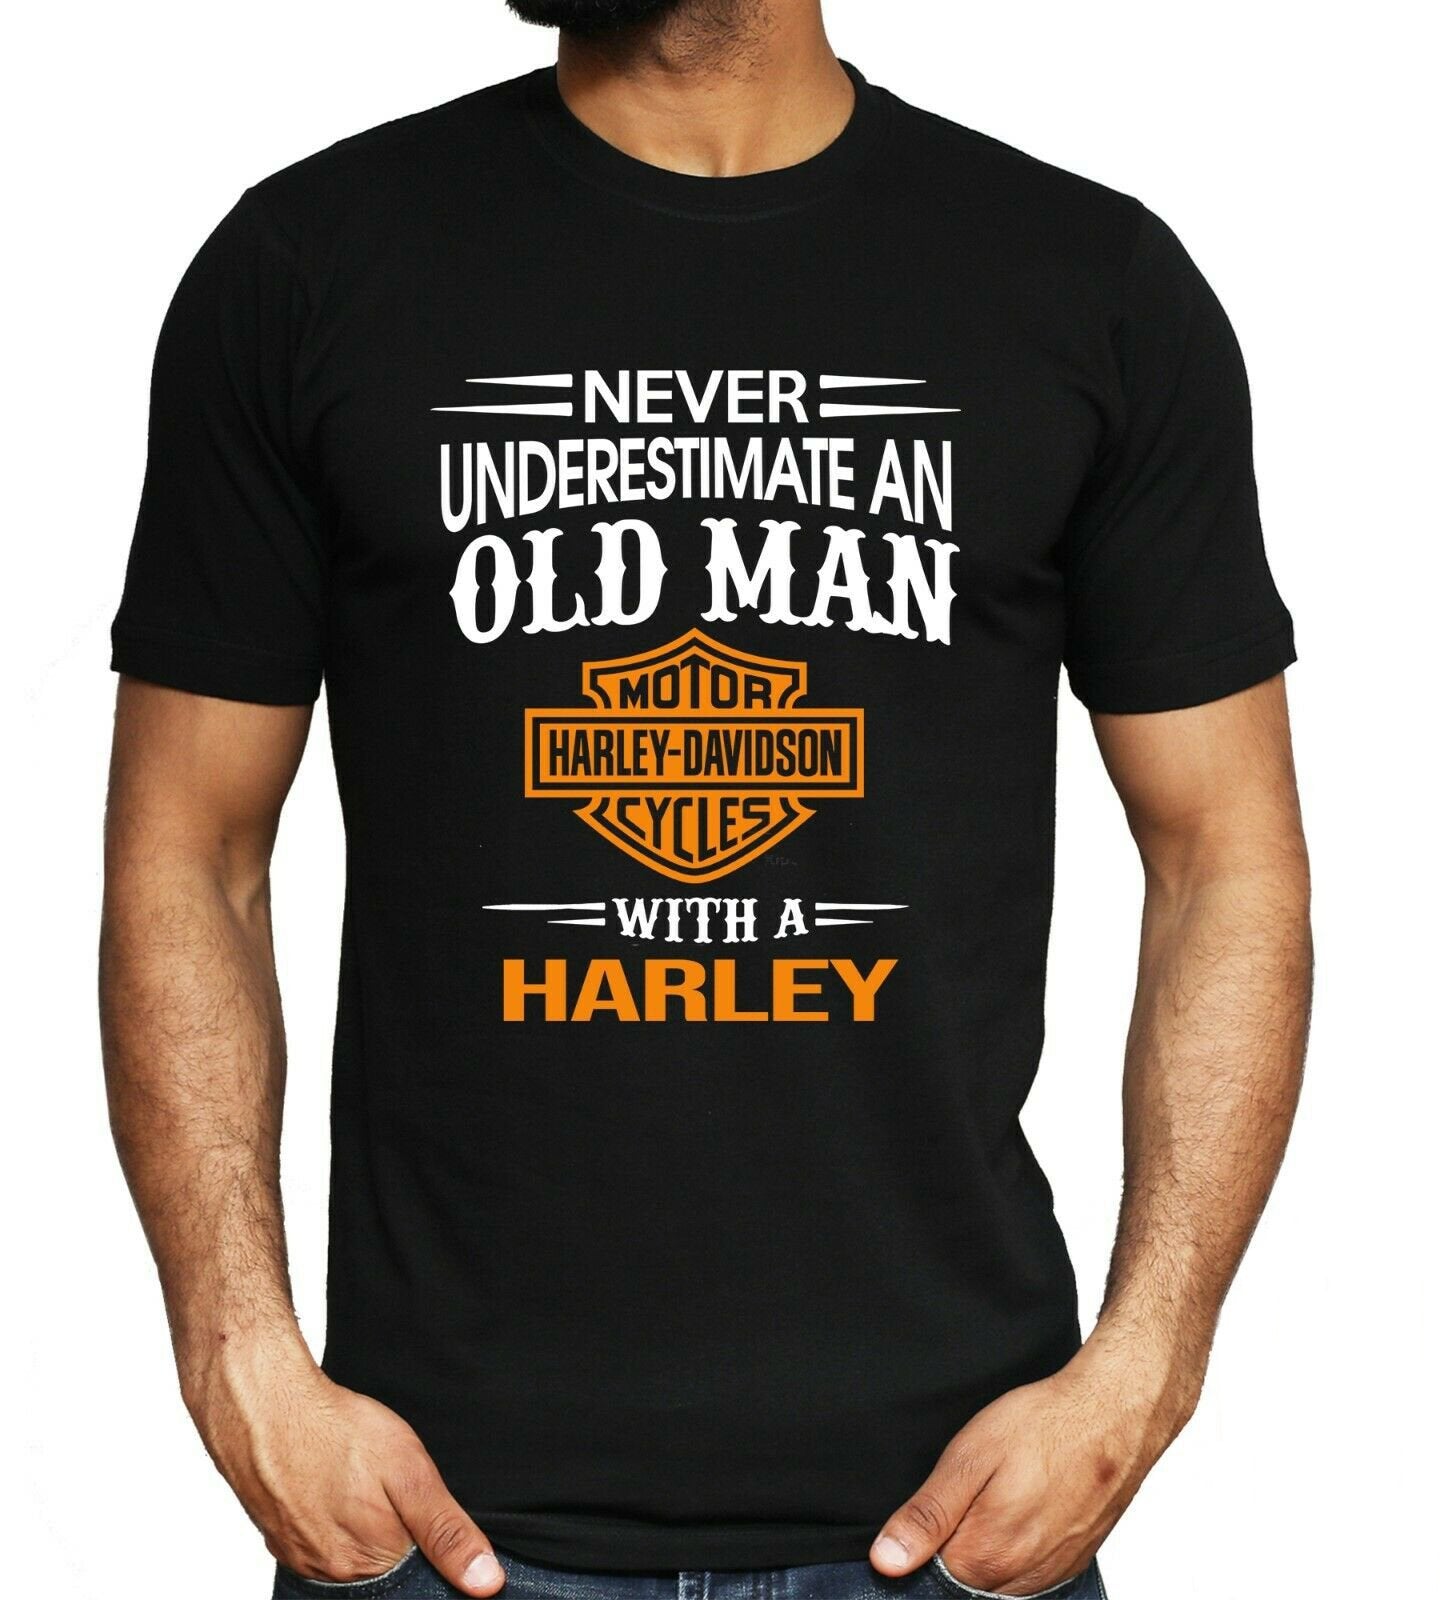 funny harley shirts